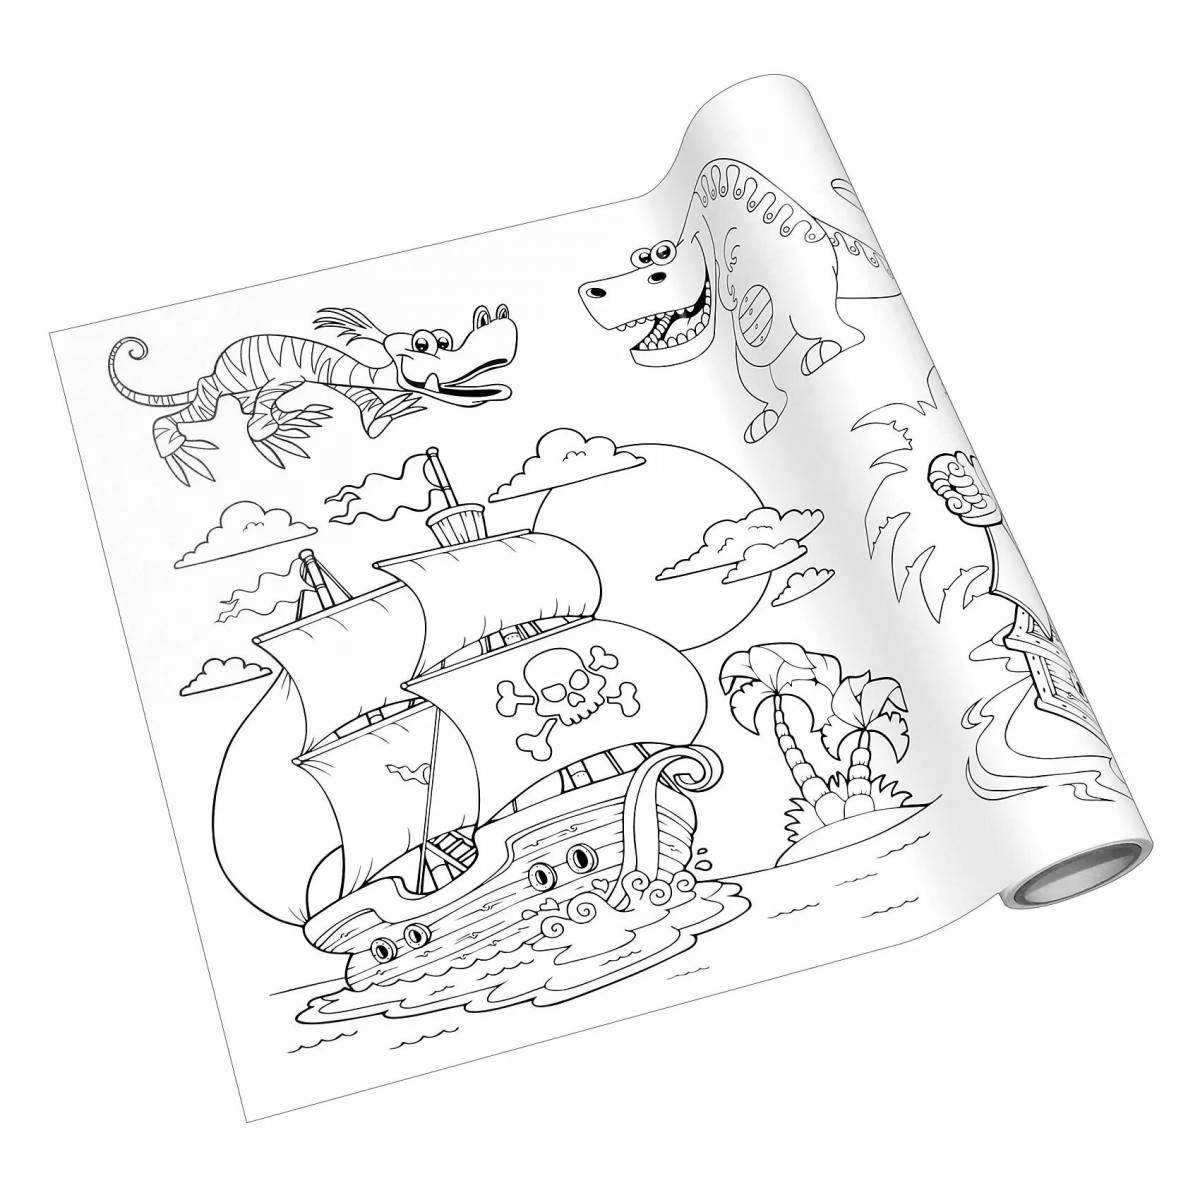 Playful ikea coloring book